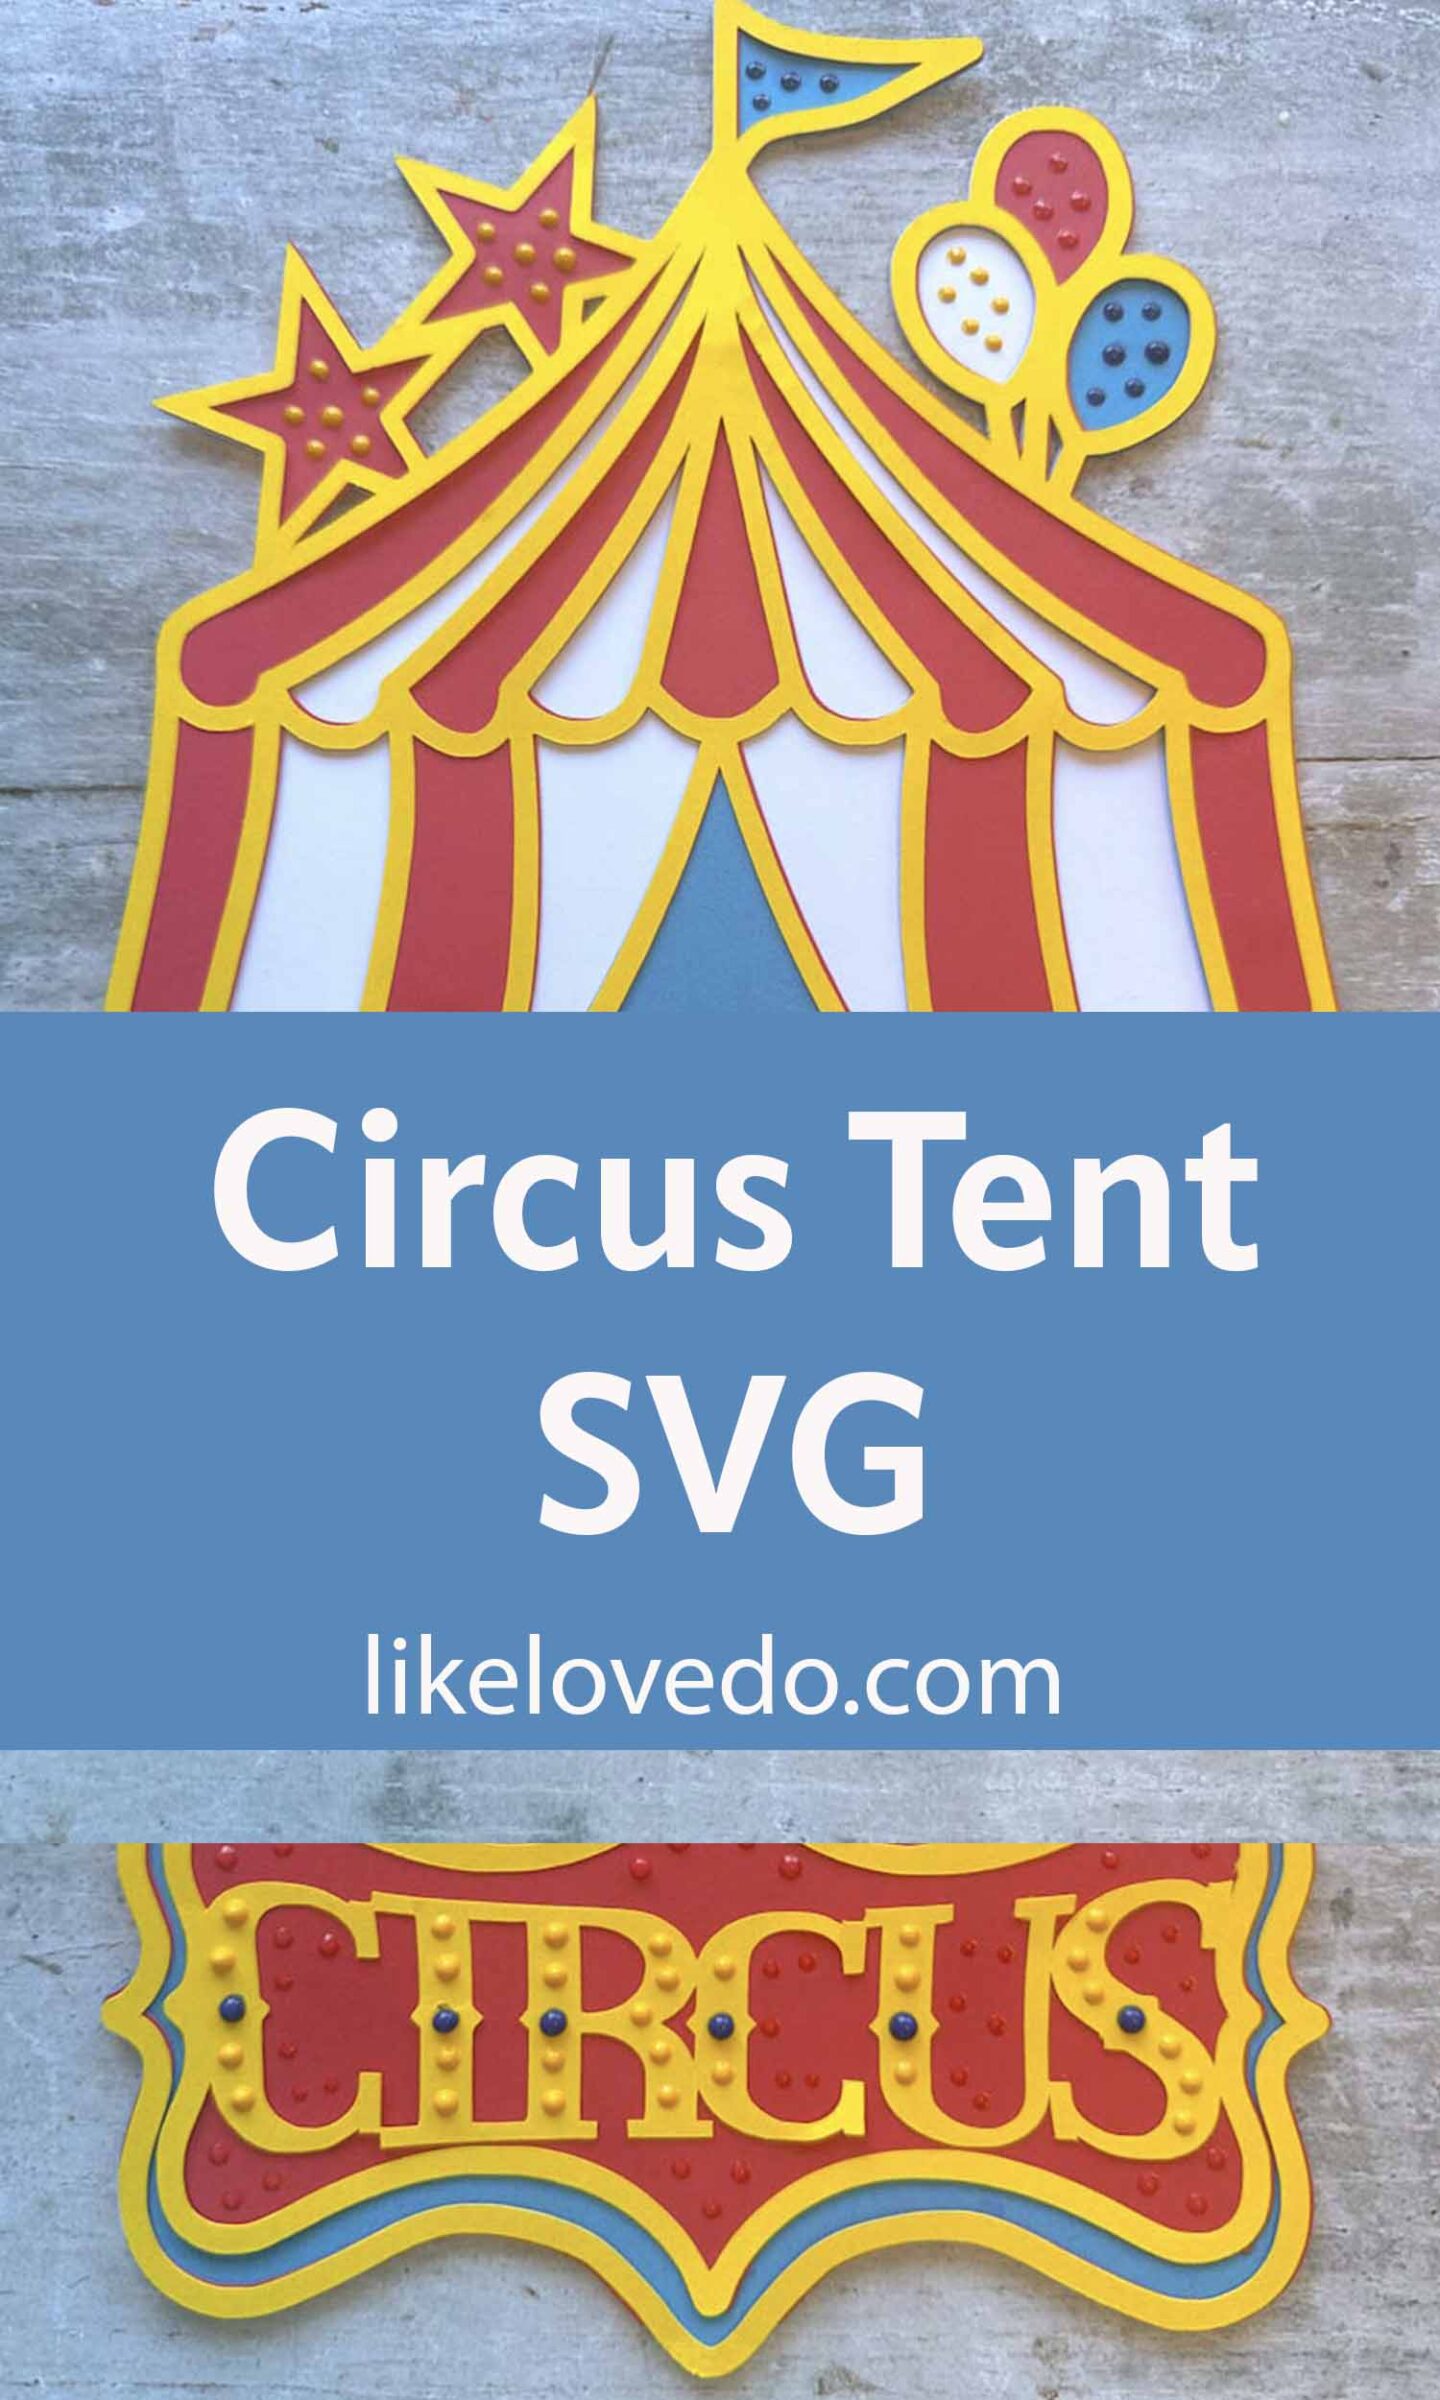 Circus tent svg pin image 